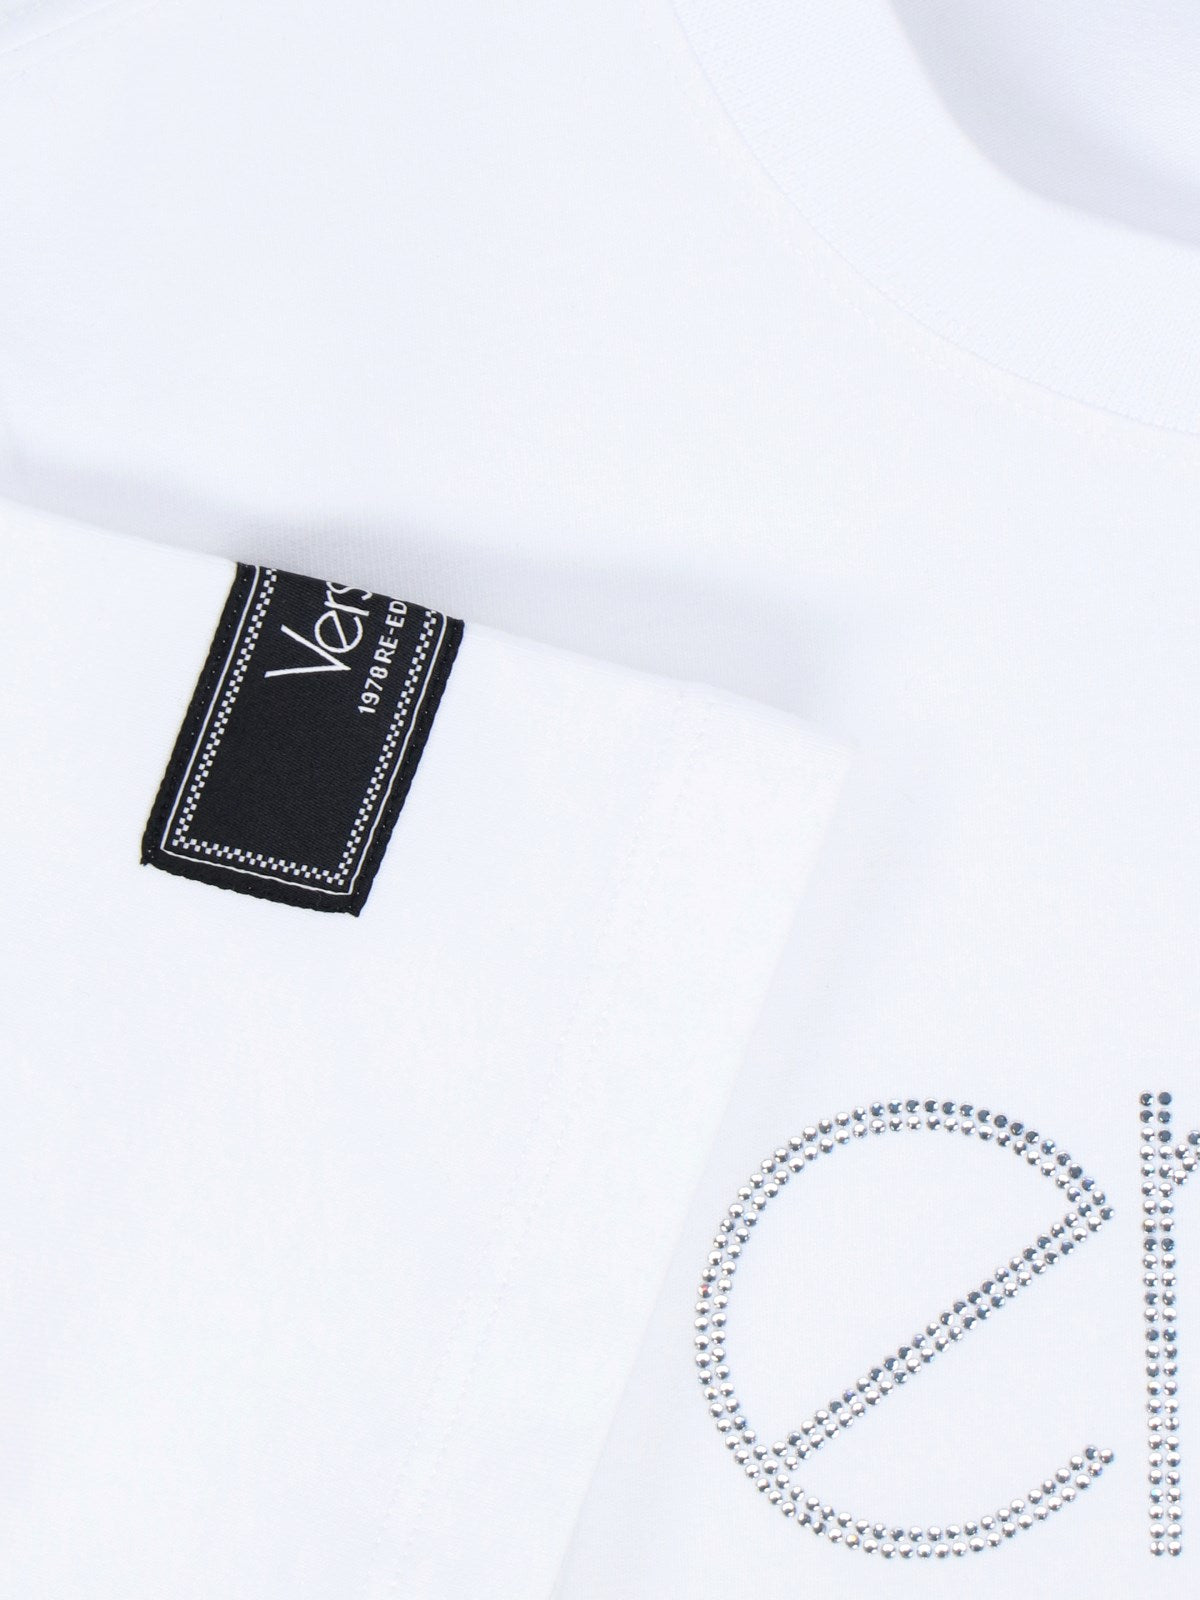 Versace T-Shirt "1978 Re-Edition Logo"-t-shirt-Versace-T-shirt "1978 re-edition logo" Versace, in misto cotone bianco, girocollo, maniche corte, dettaglio etichetta a contrasto applicata manica, logo cristalli fronte, orlo dritto.-Dresso